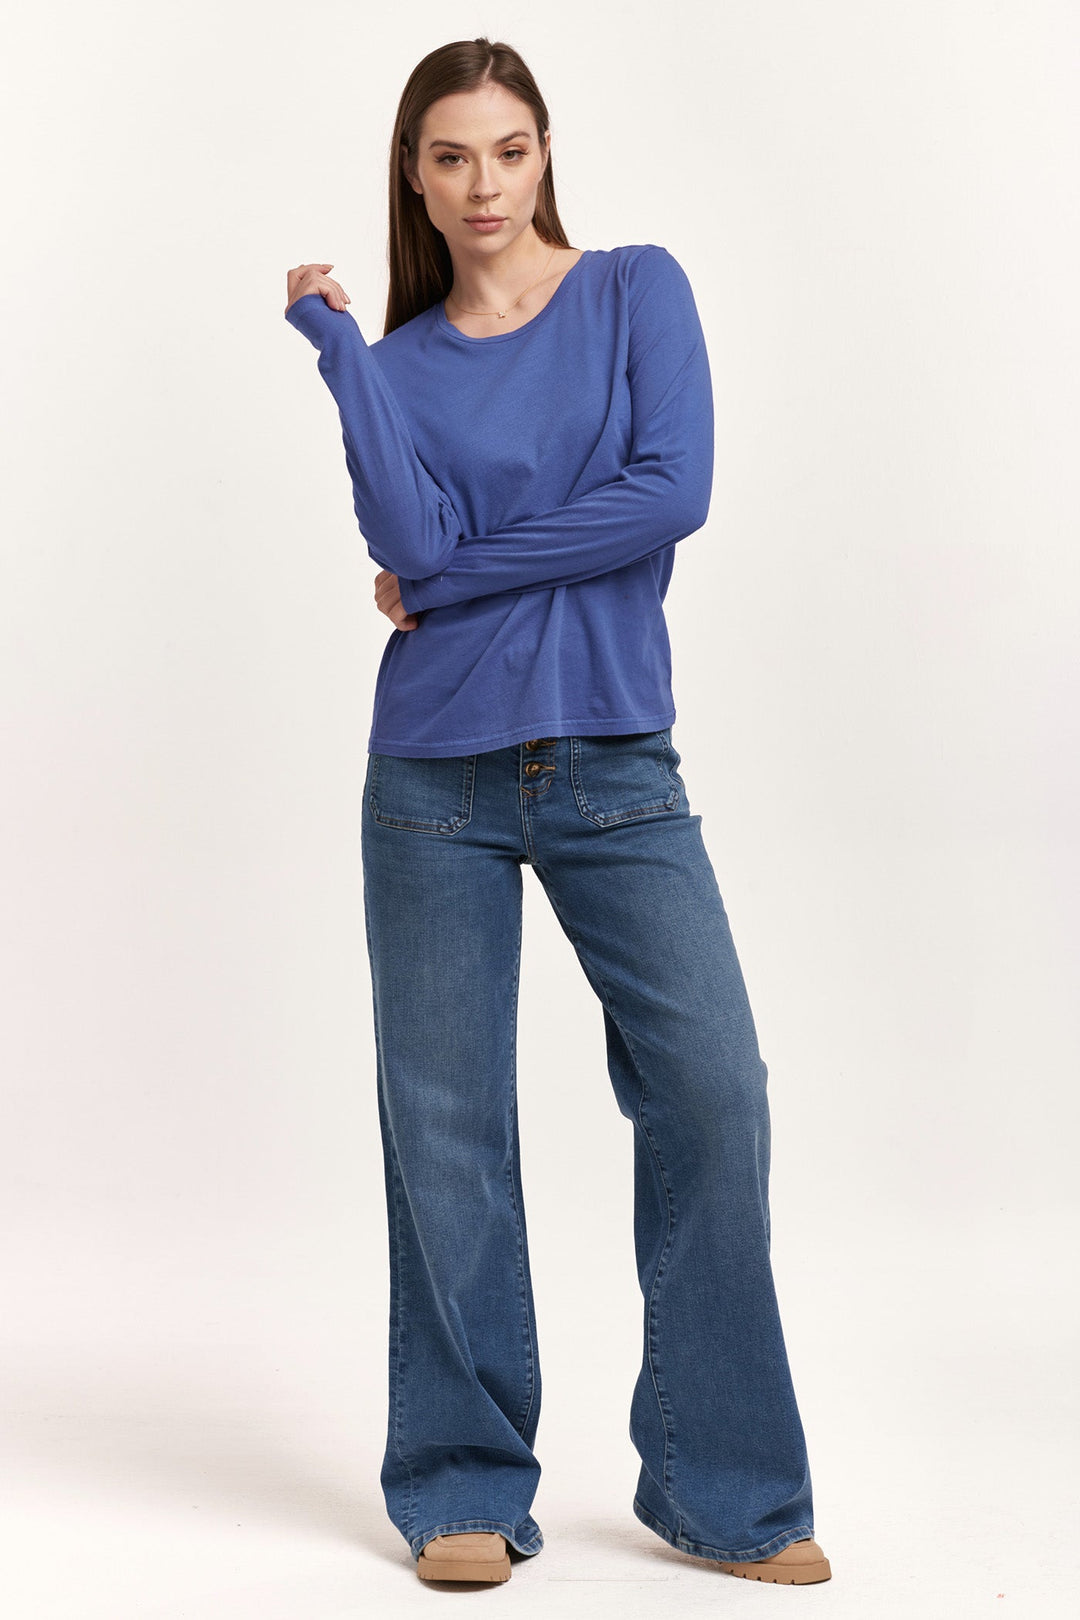 image of a female model wearing a KATHY LONG SLEEVE JERSEY TEE BLUE LOLITE DEAR JOHN DENIM 